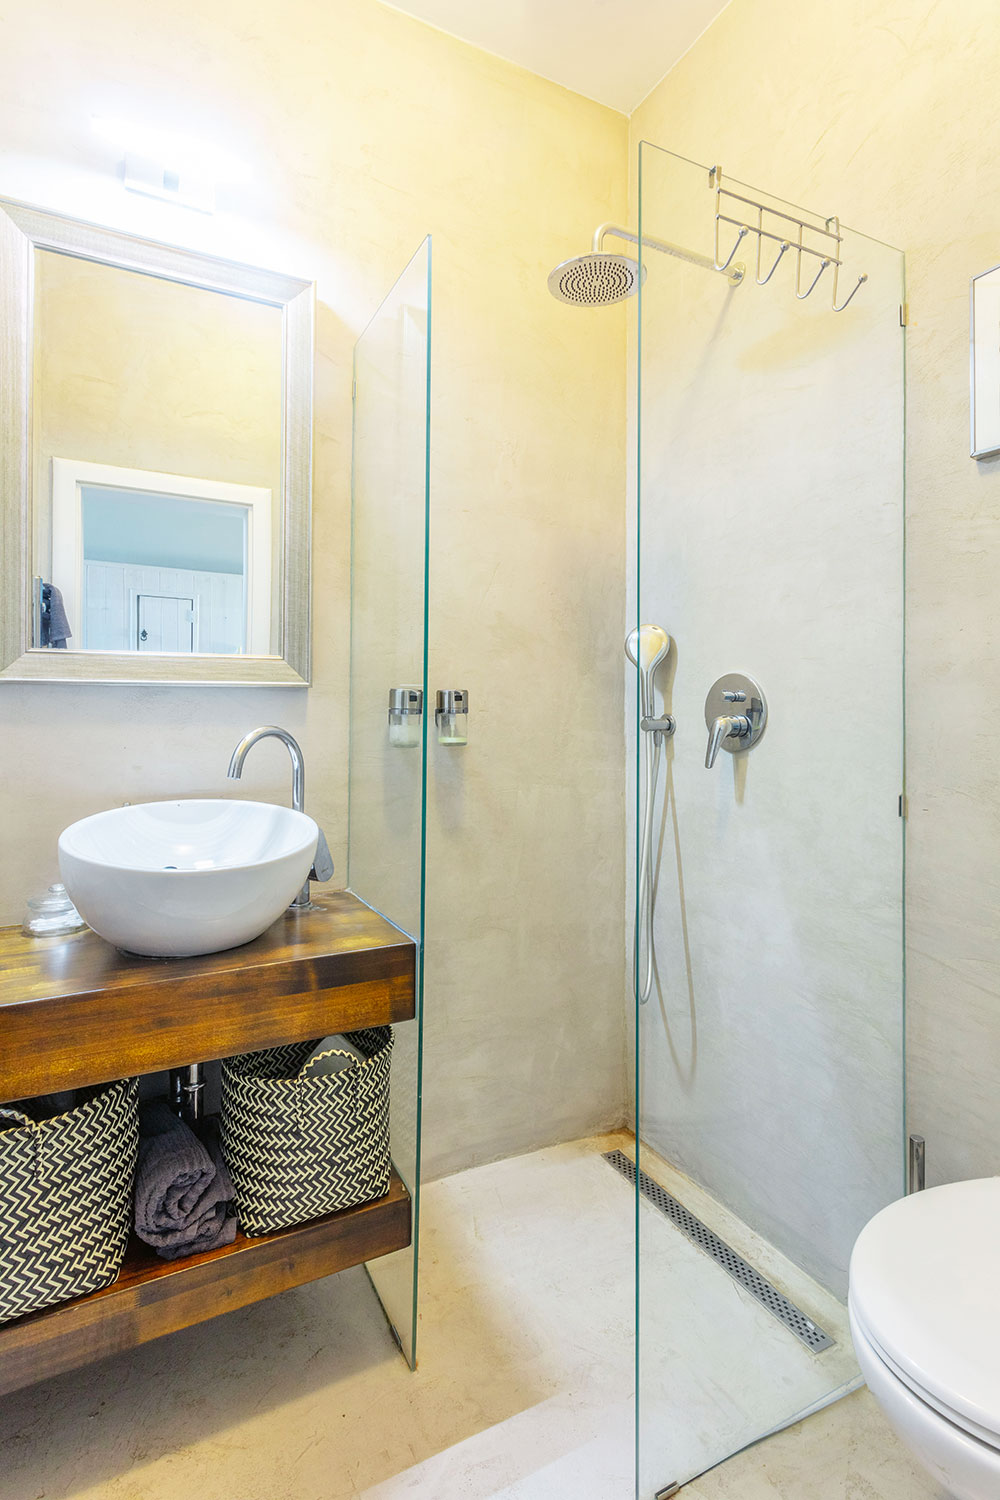 Rekonstrukce koupelny je nejnovějším počinem. Betonová stěrka zakrývá původní křiklavě červené obklady, které působily divoce a nepatřičně. Vybavení je střídmé v barvě teakového dřeva. Zrcadlo ve zdobeném rámu pak stylově propojuje koupelnu se zbytkem domu. FOTO JIŘÍ HURT